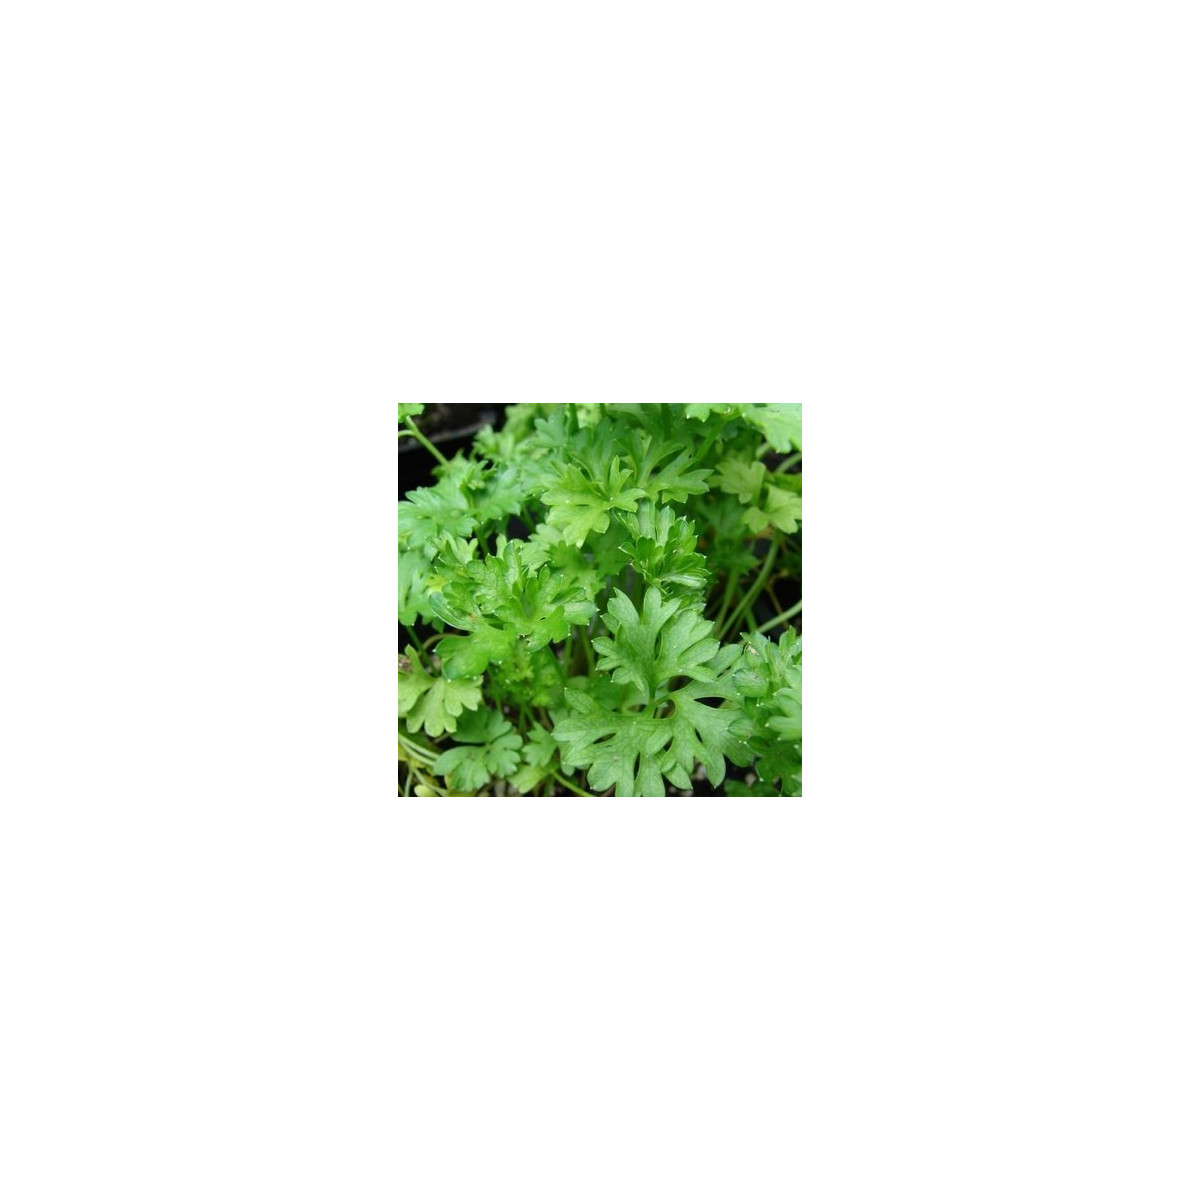 Petržel naťová kadeřavá - tmavě zelená - semena Petržele - Petroselinum crispum convar - 1 gr